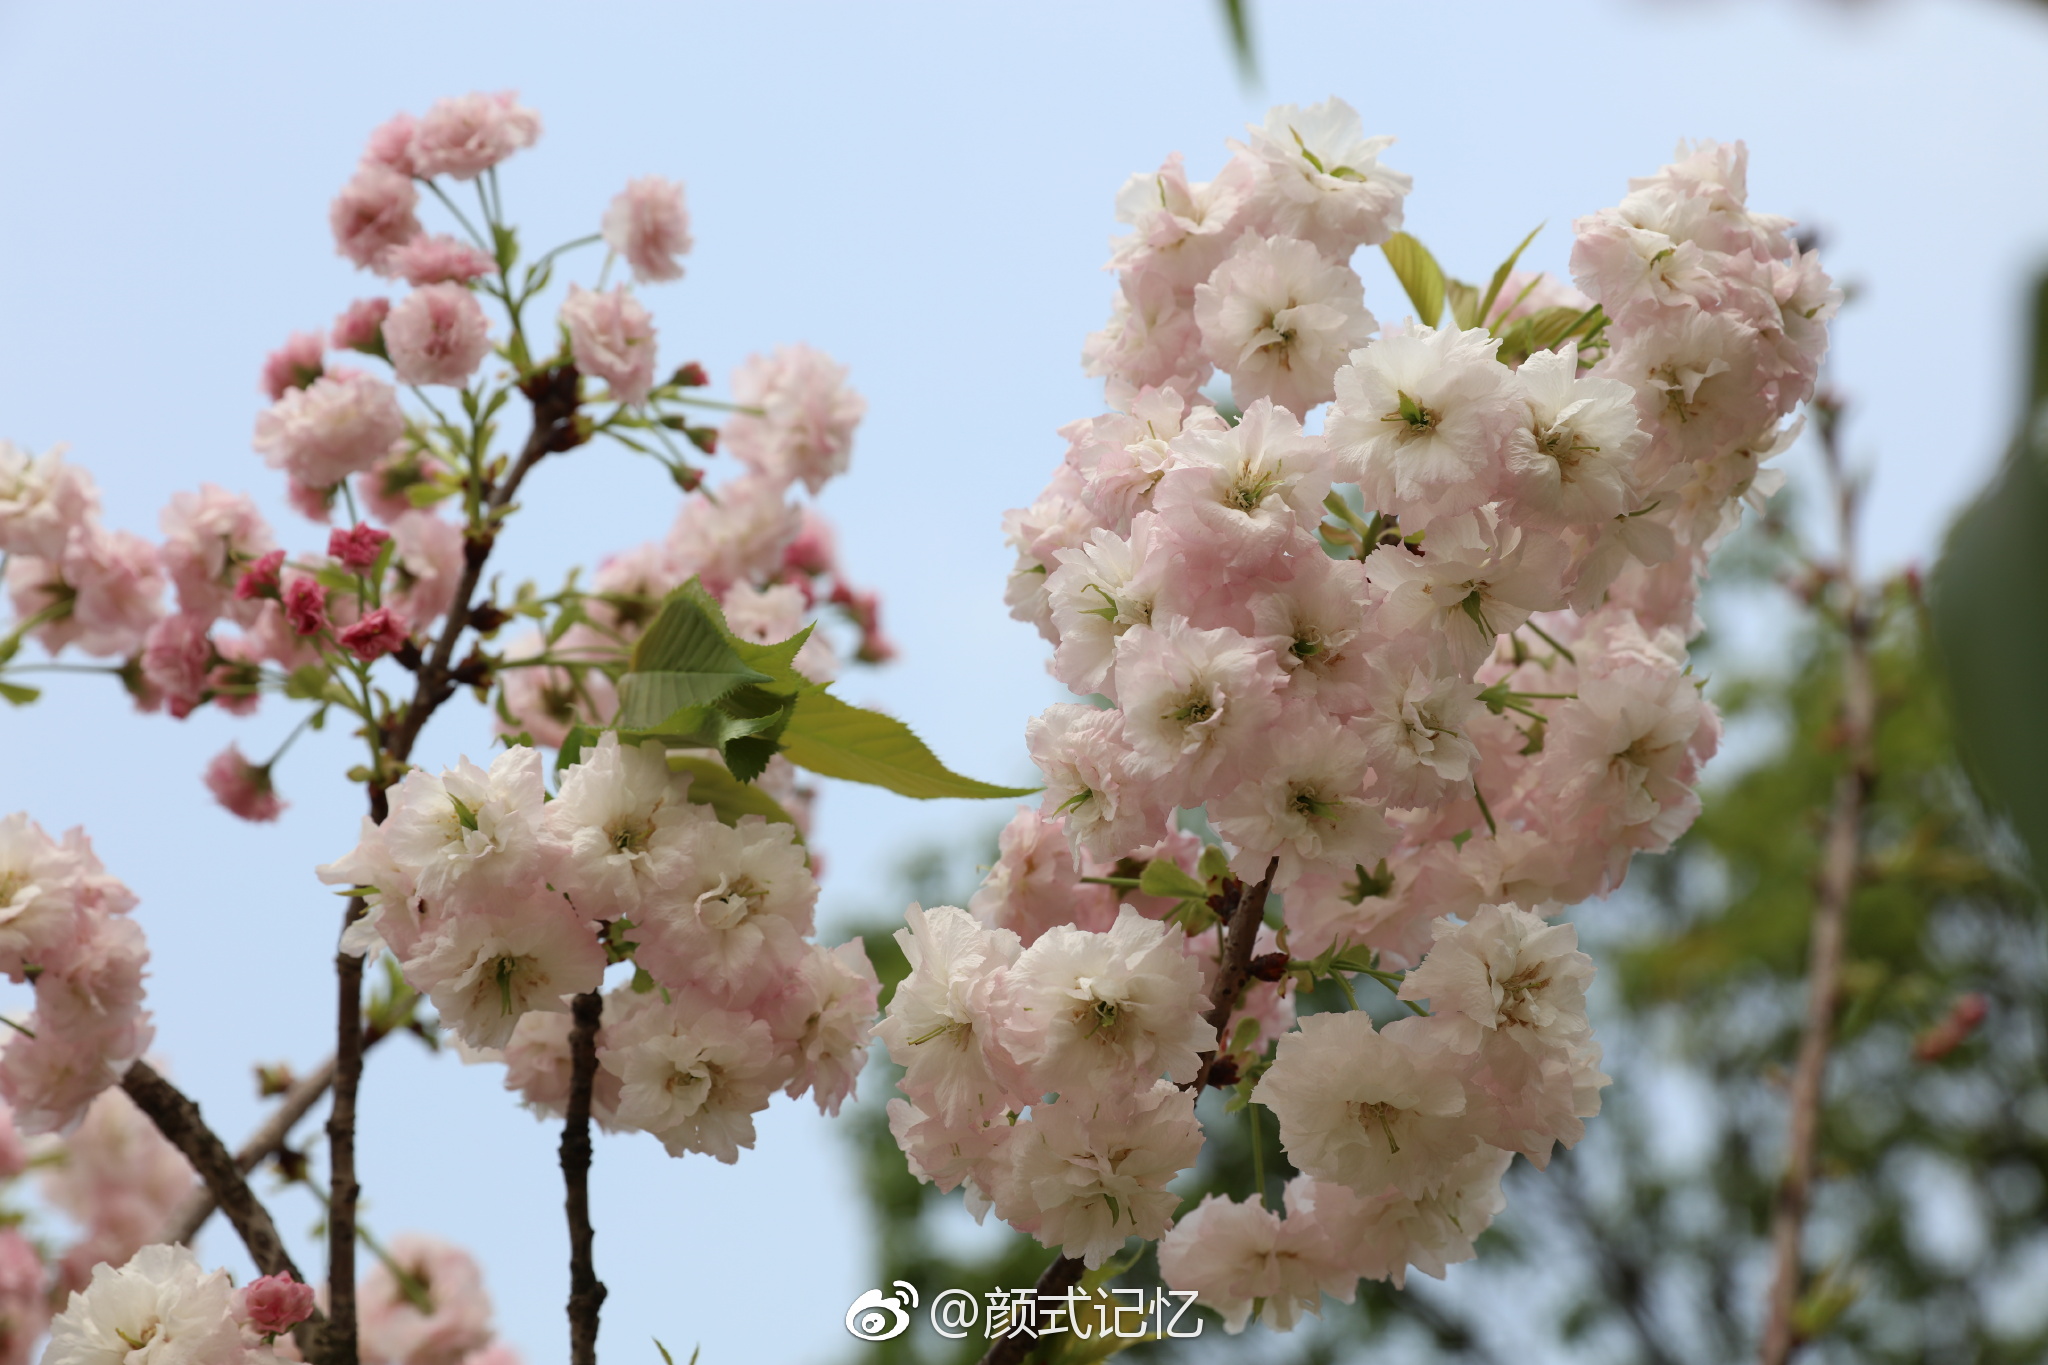 【携程攻略】重庆垫江牡丹樱花世界景点,简直美翻天，美丽的花海，美丽的郁金香，漂亮的樱花，重庆开车下来2…